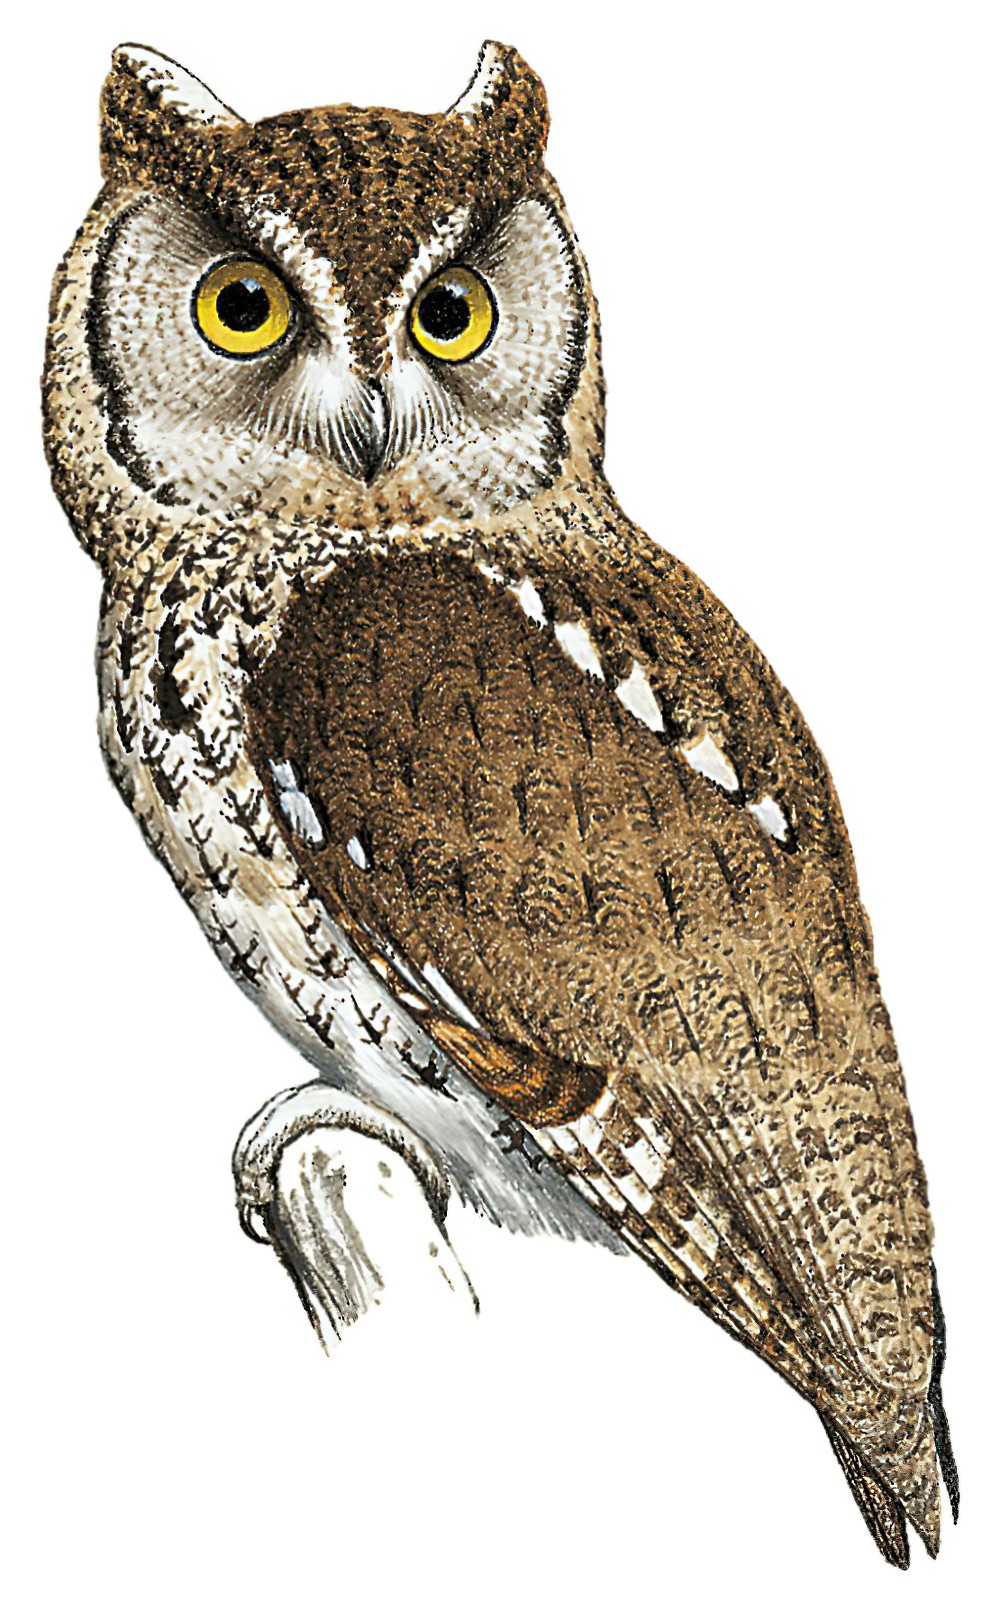 Western Screech-Owl / Megascops kennicottii